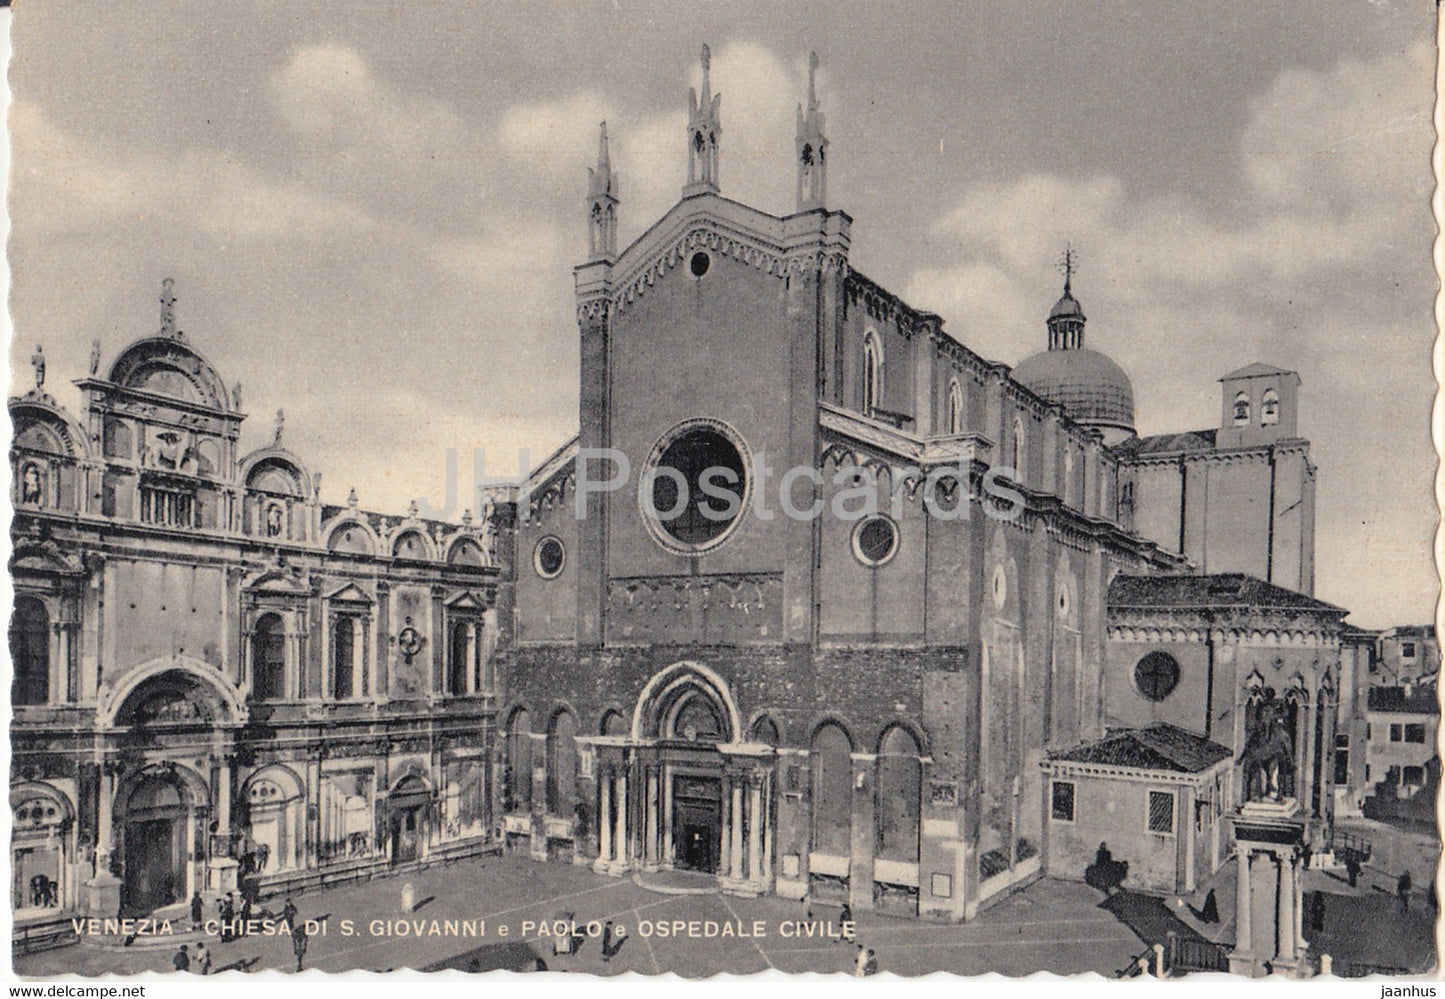 Venezia - Venice - Chiesa di S Giovanni e Paolo e Ospedale Civile - church - Hospital - old postcard - Italy - unused - JH Postcards